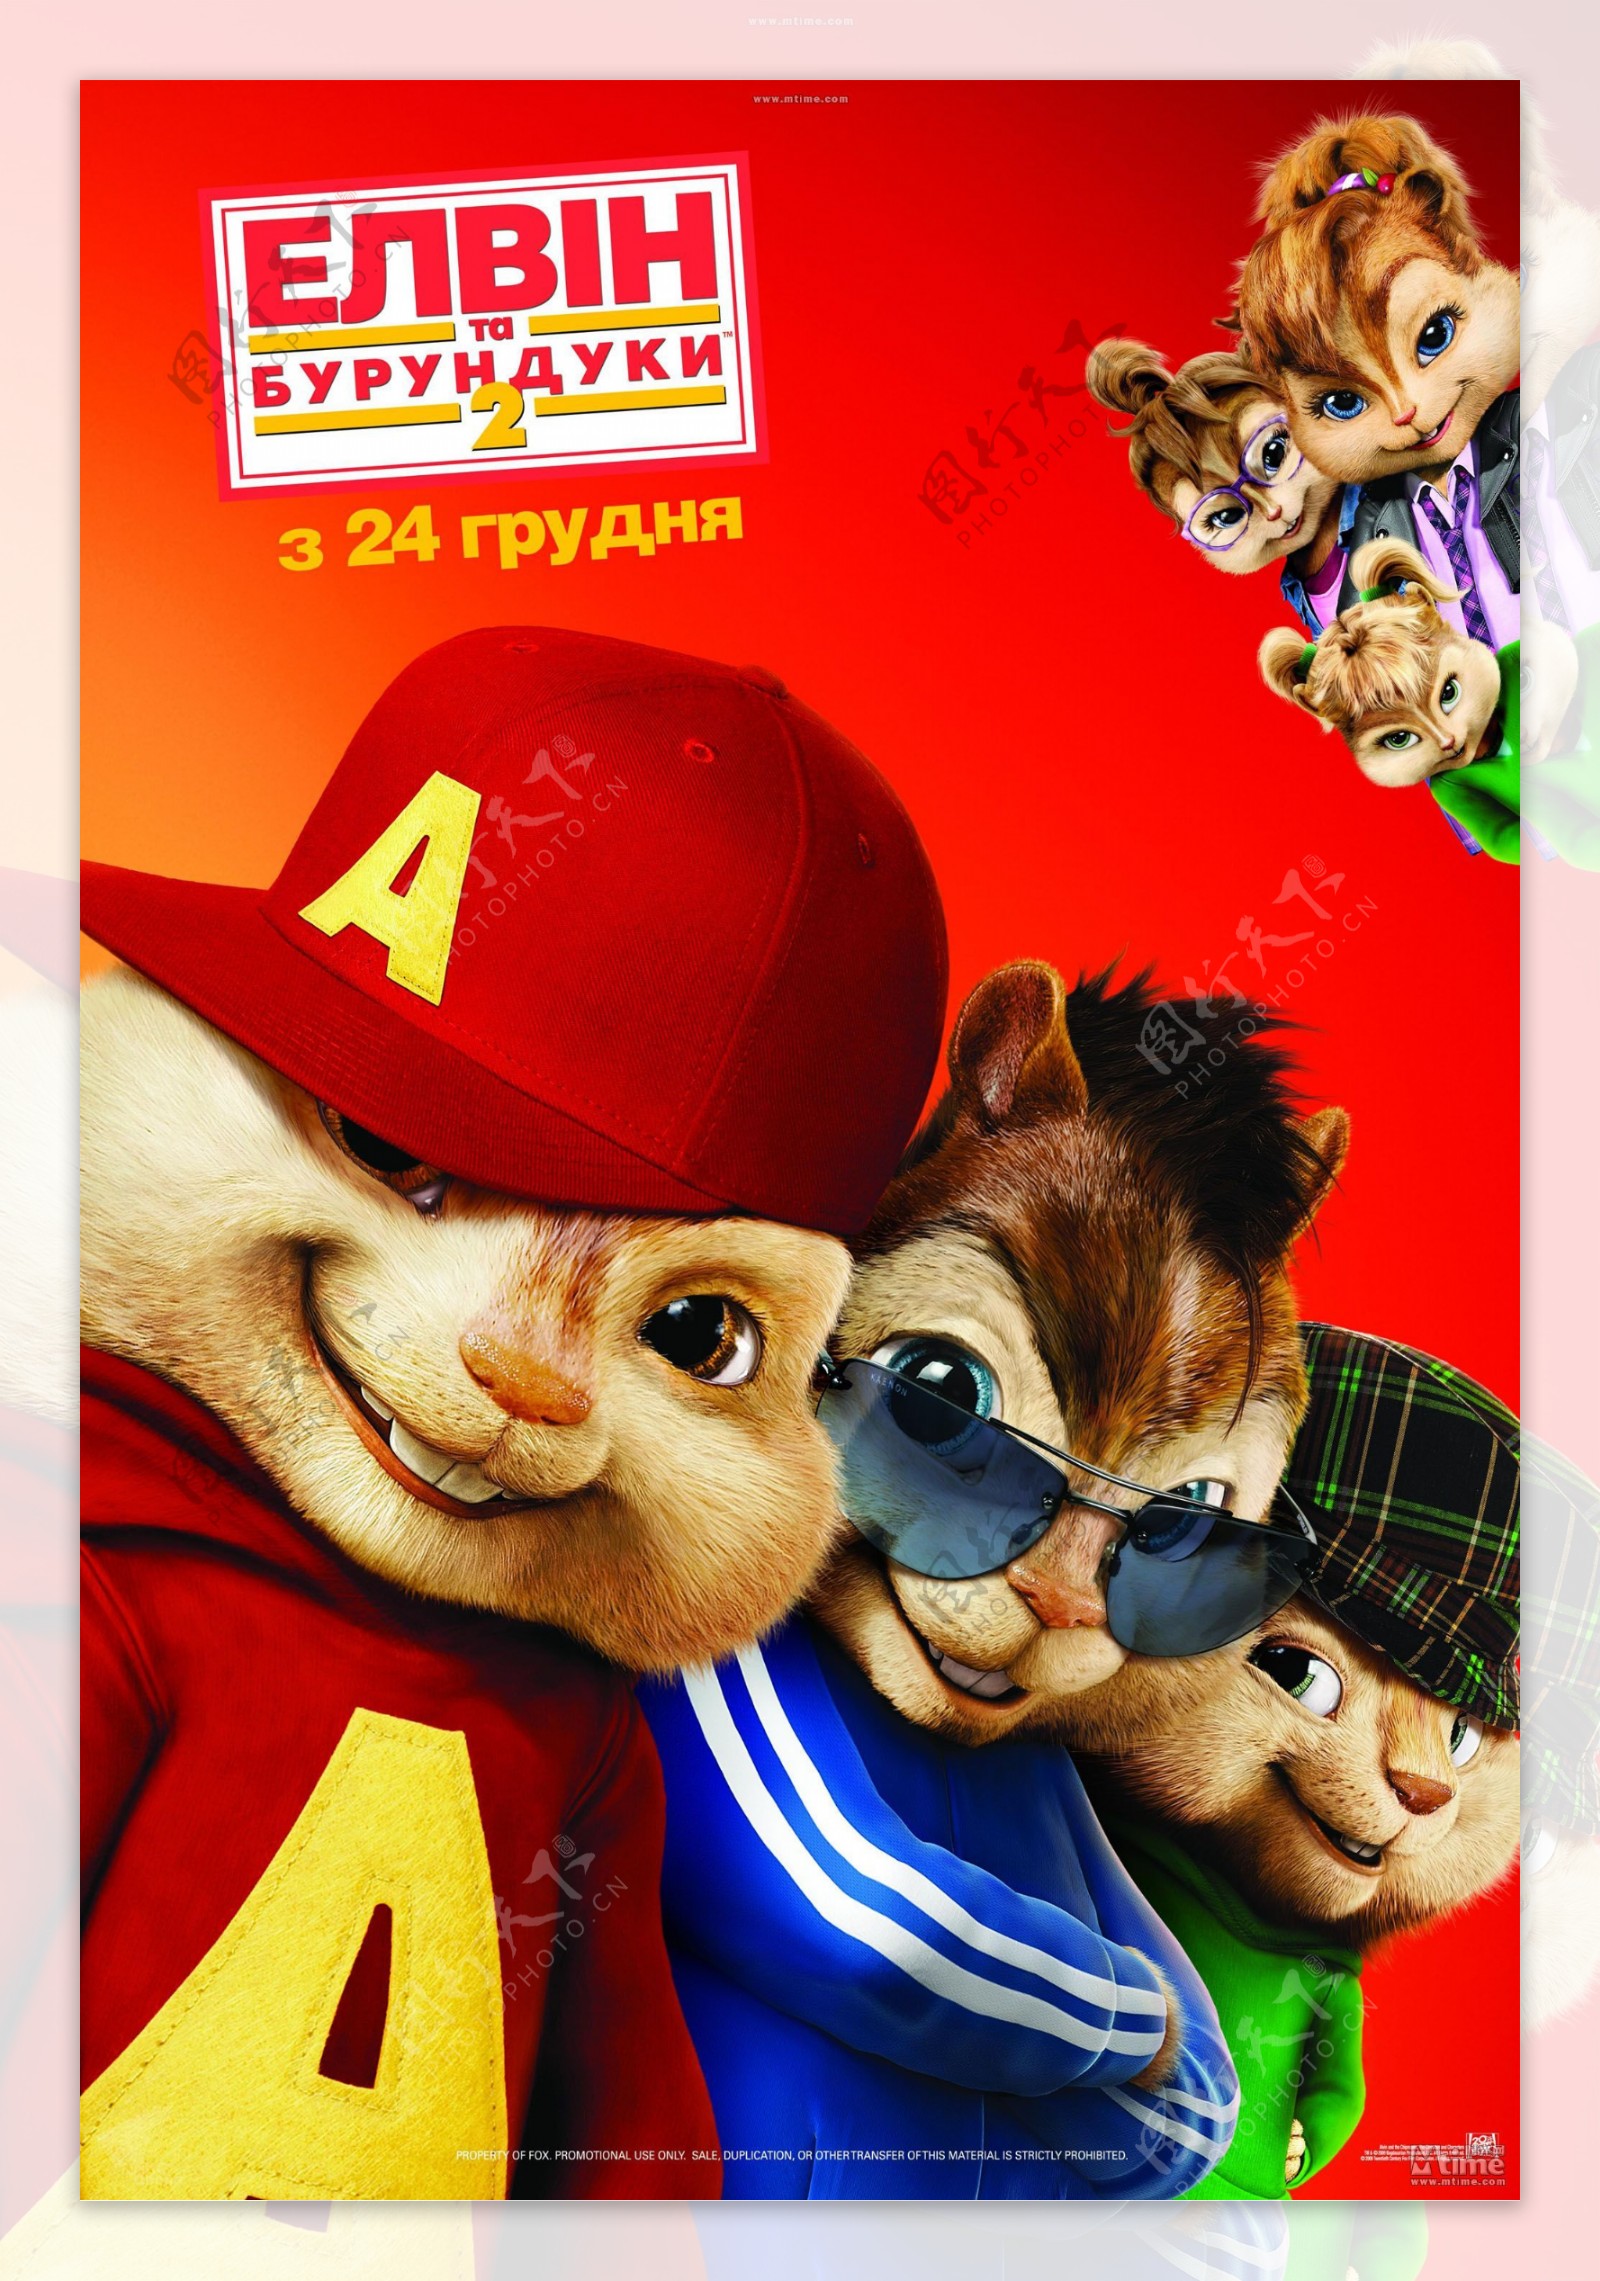 鼠来宝2高清晰海报主海报俄罗斯版图片